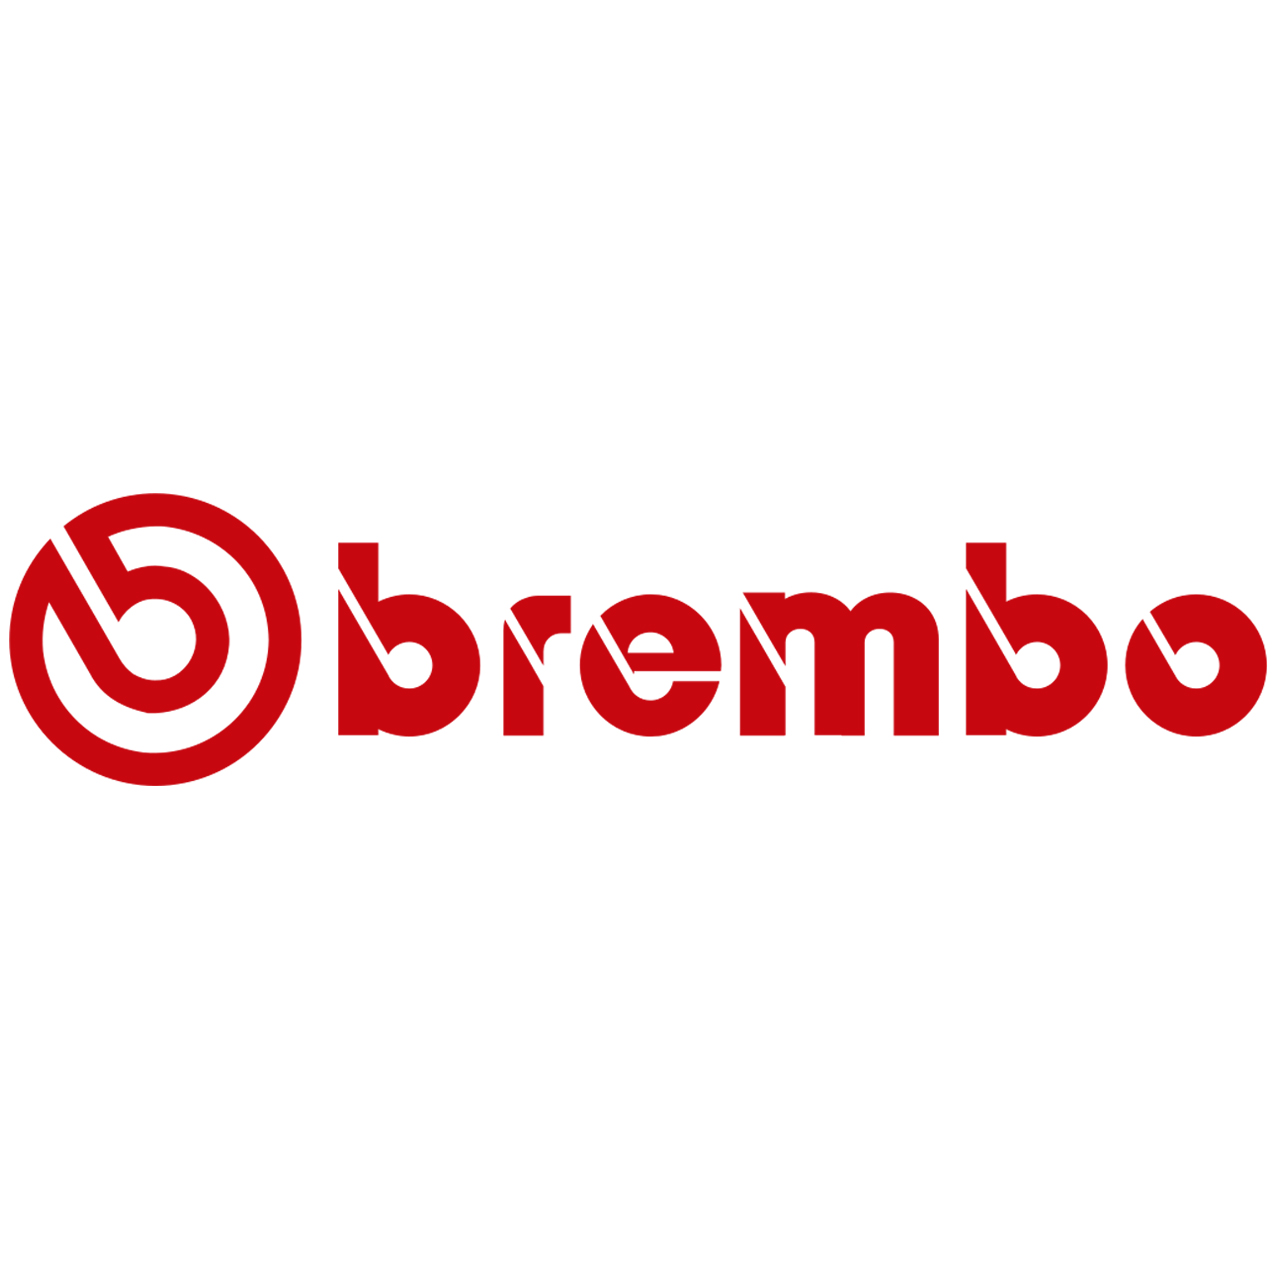 Logo Brembo